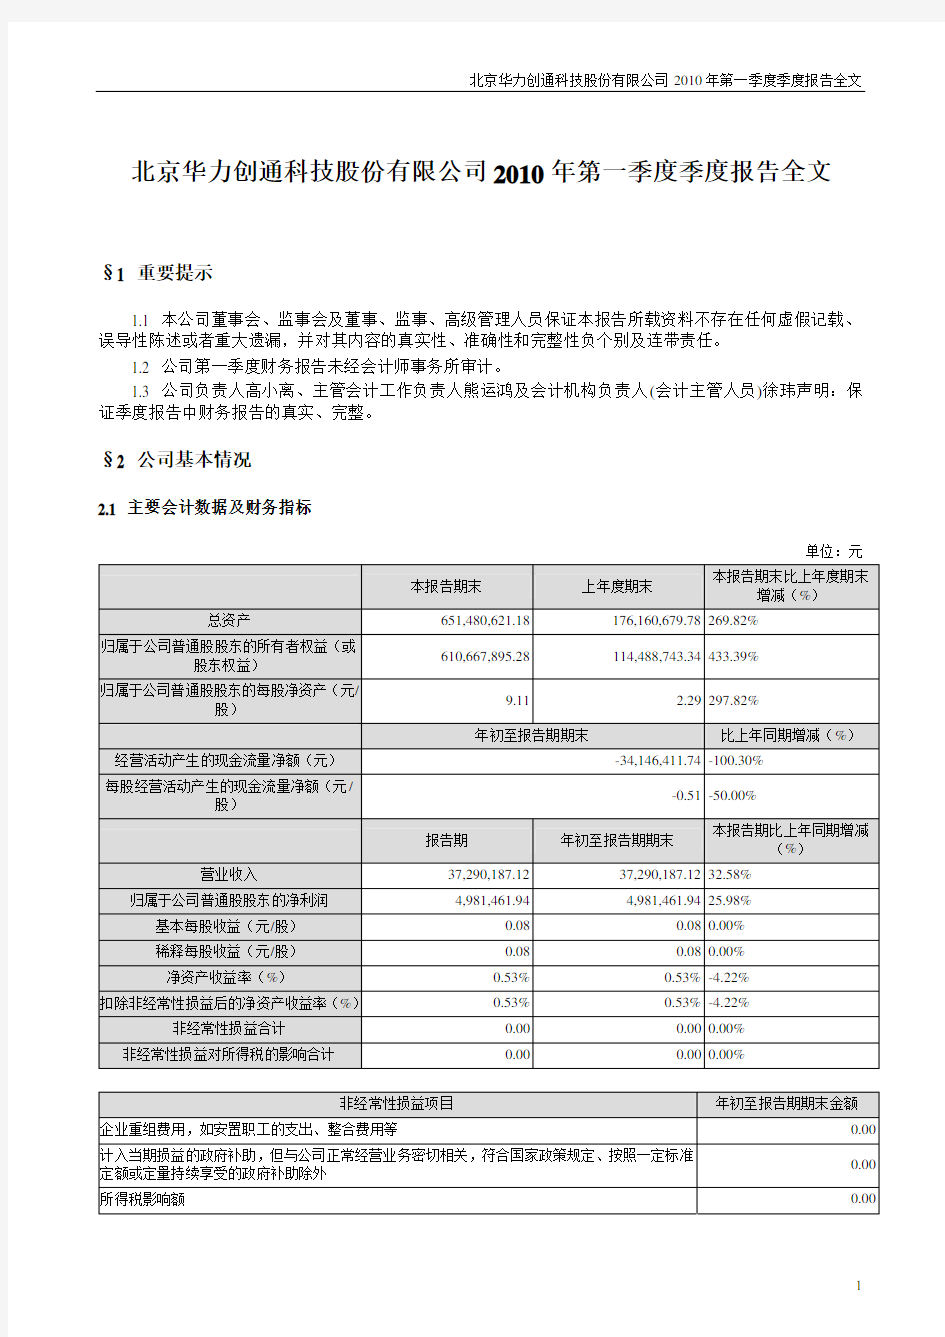 北京华力创通科技股份有限公司2010年第一季度季度报告全文